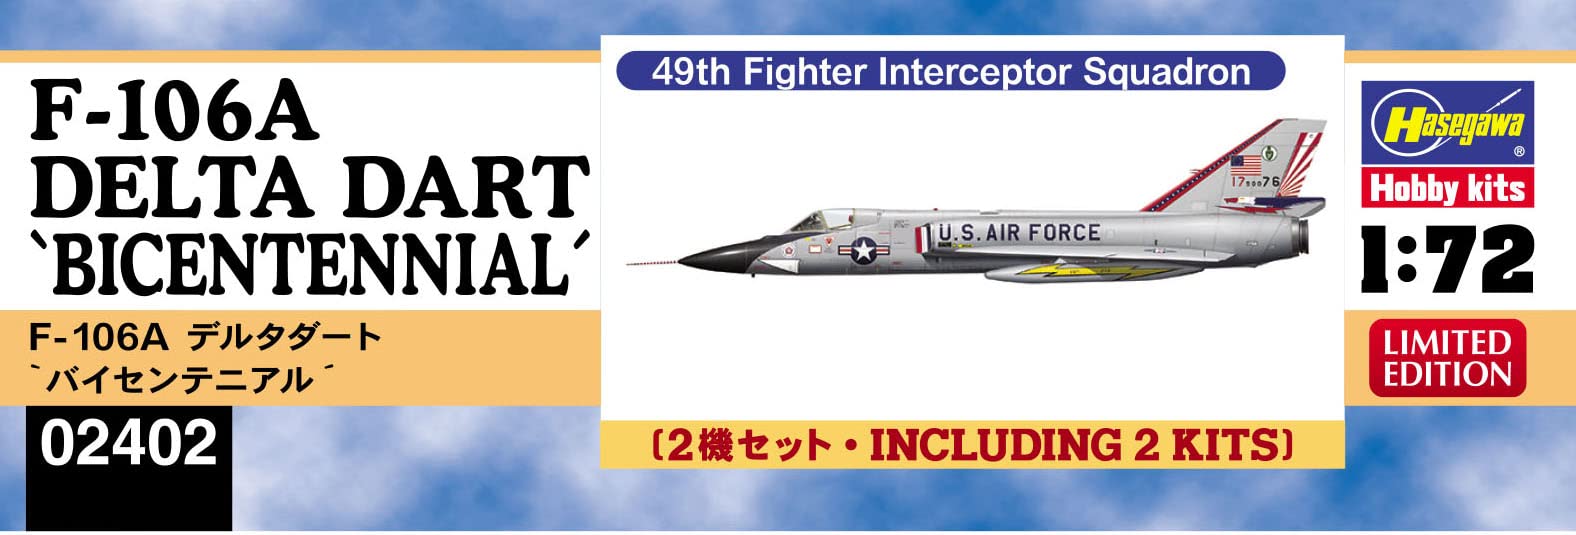 HASEGAWA 1/72 U.S. Air Force F-106A Delta Dart Bicentennial Plastic Model